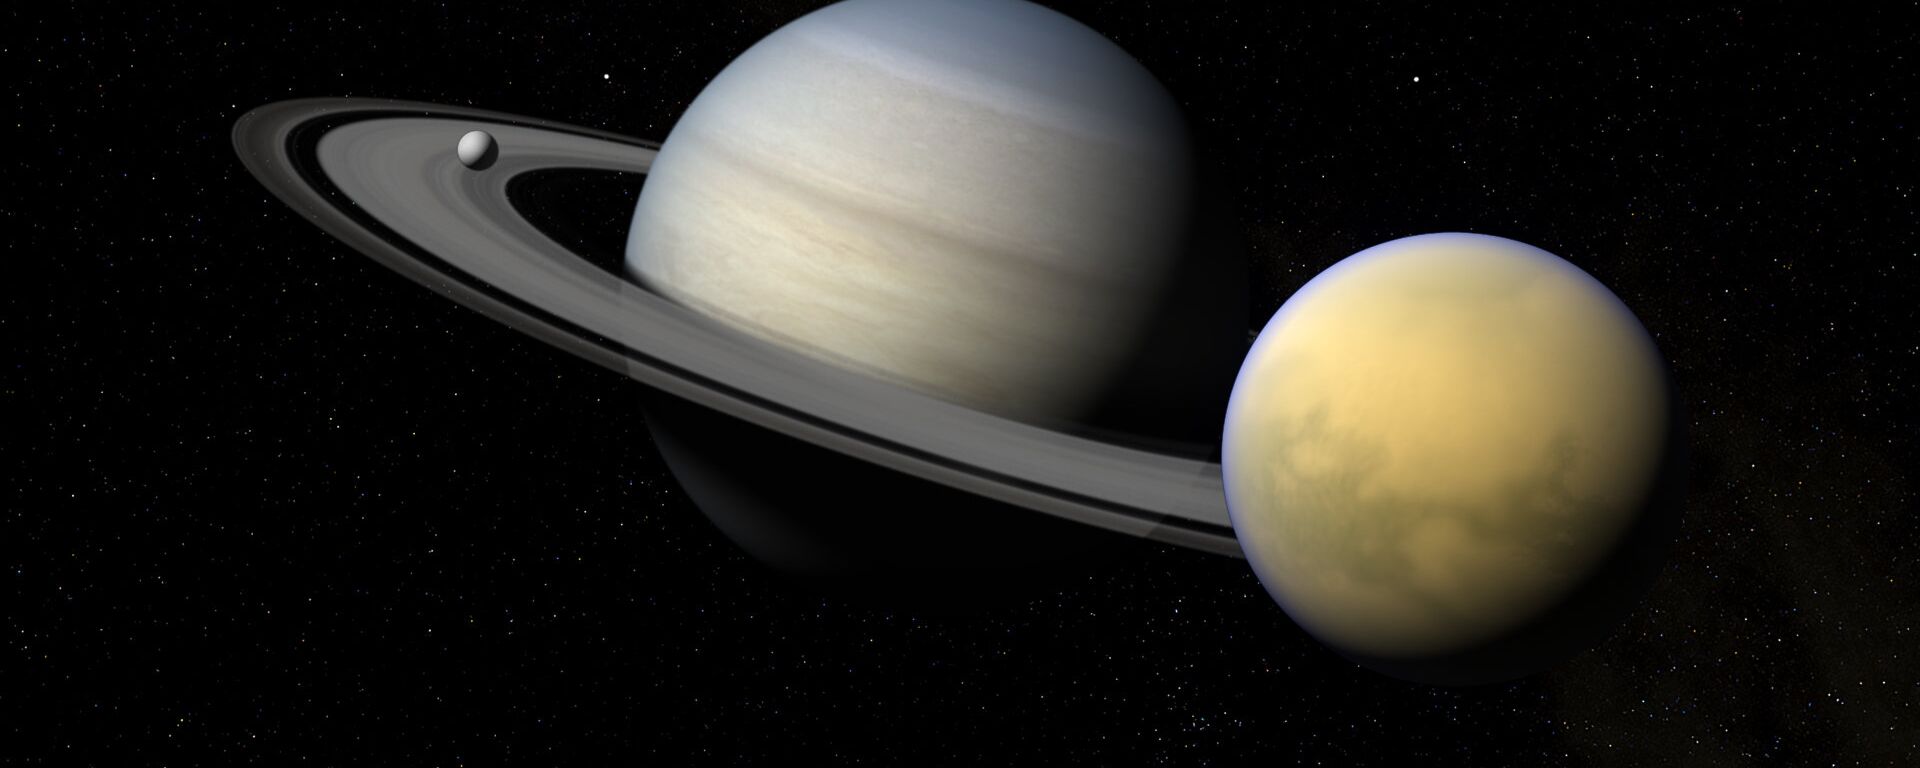 Saturno y sus satélites Titán y Encélado - Sputnik Mundo, 1920, 19.11.2019